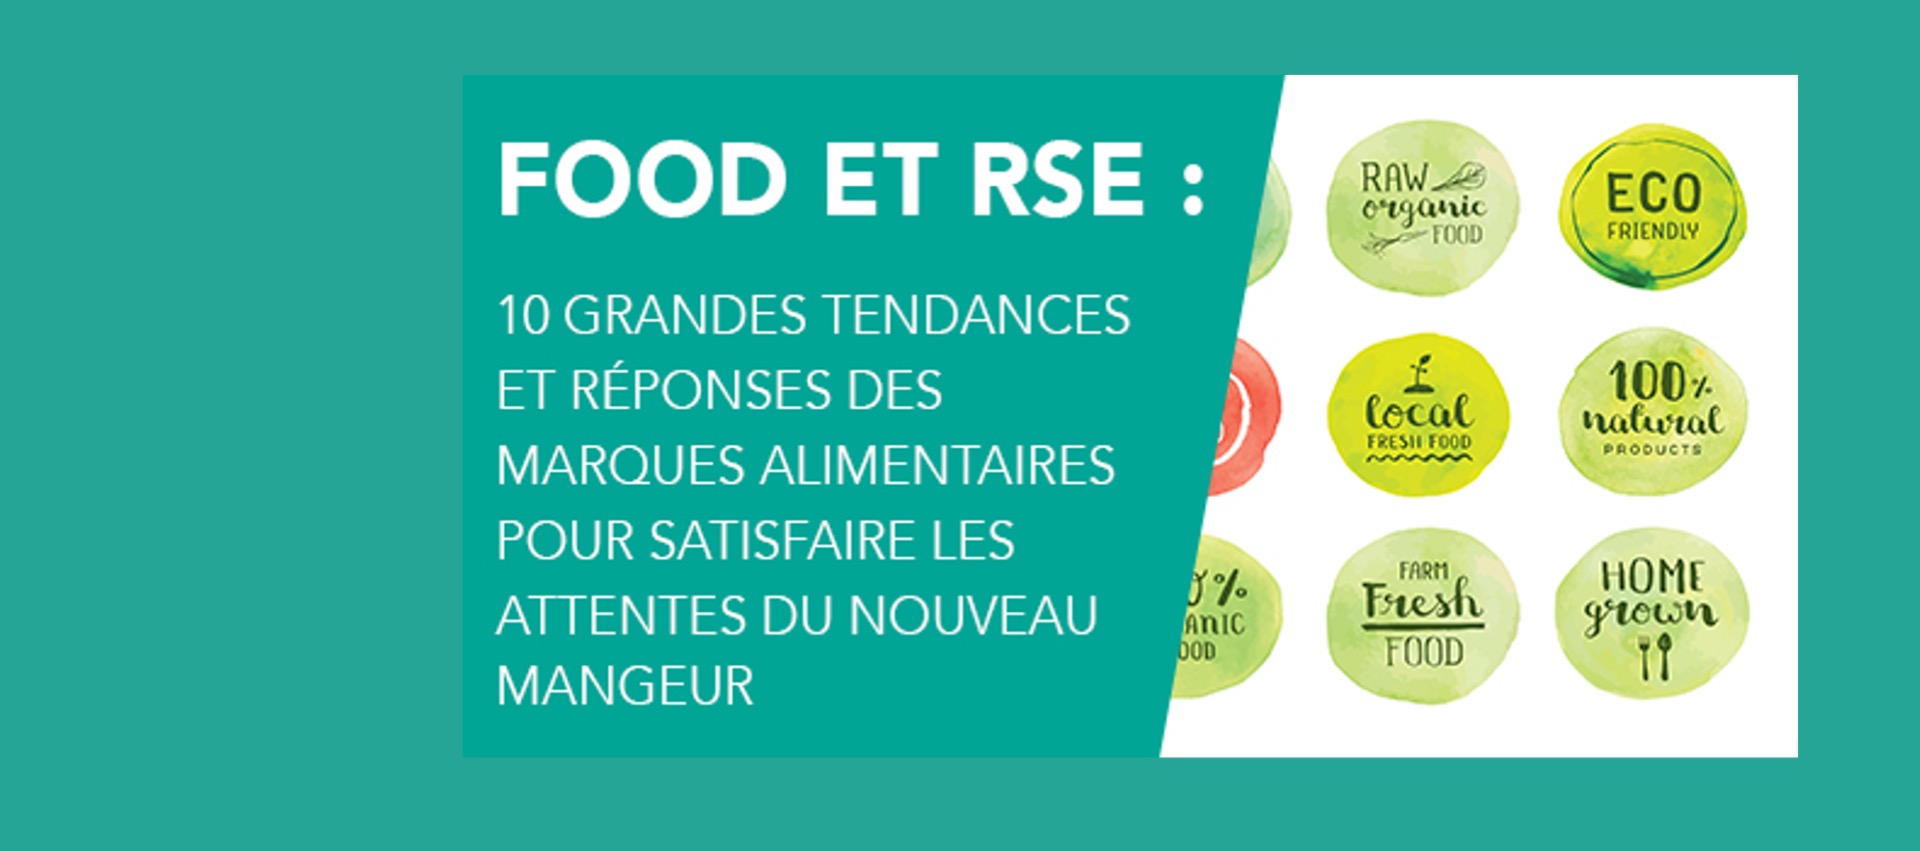 Food & RSE : 10 grandes tendances et réponses des marques alimentaires pour satisfaire les attentes du nouveau mangeur !